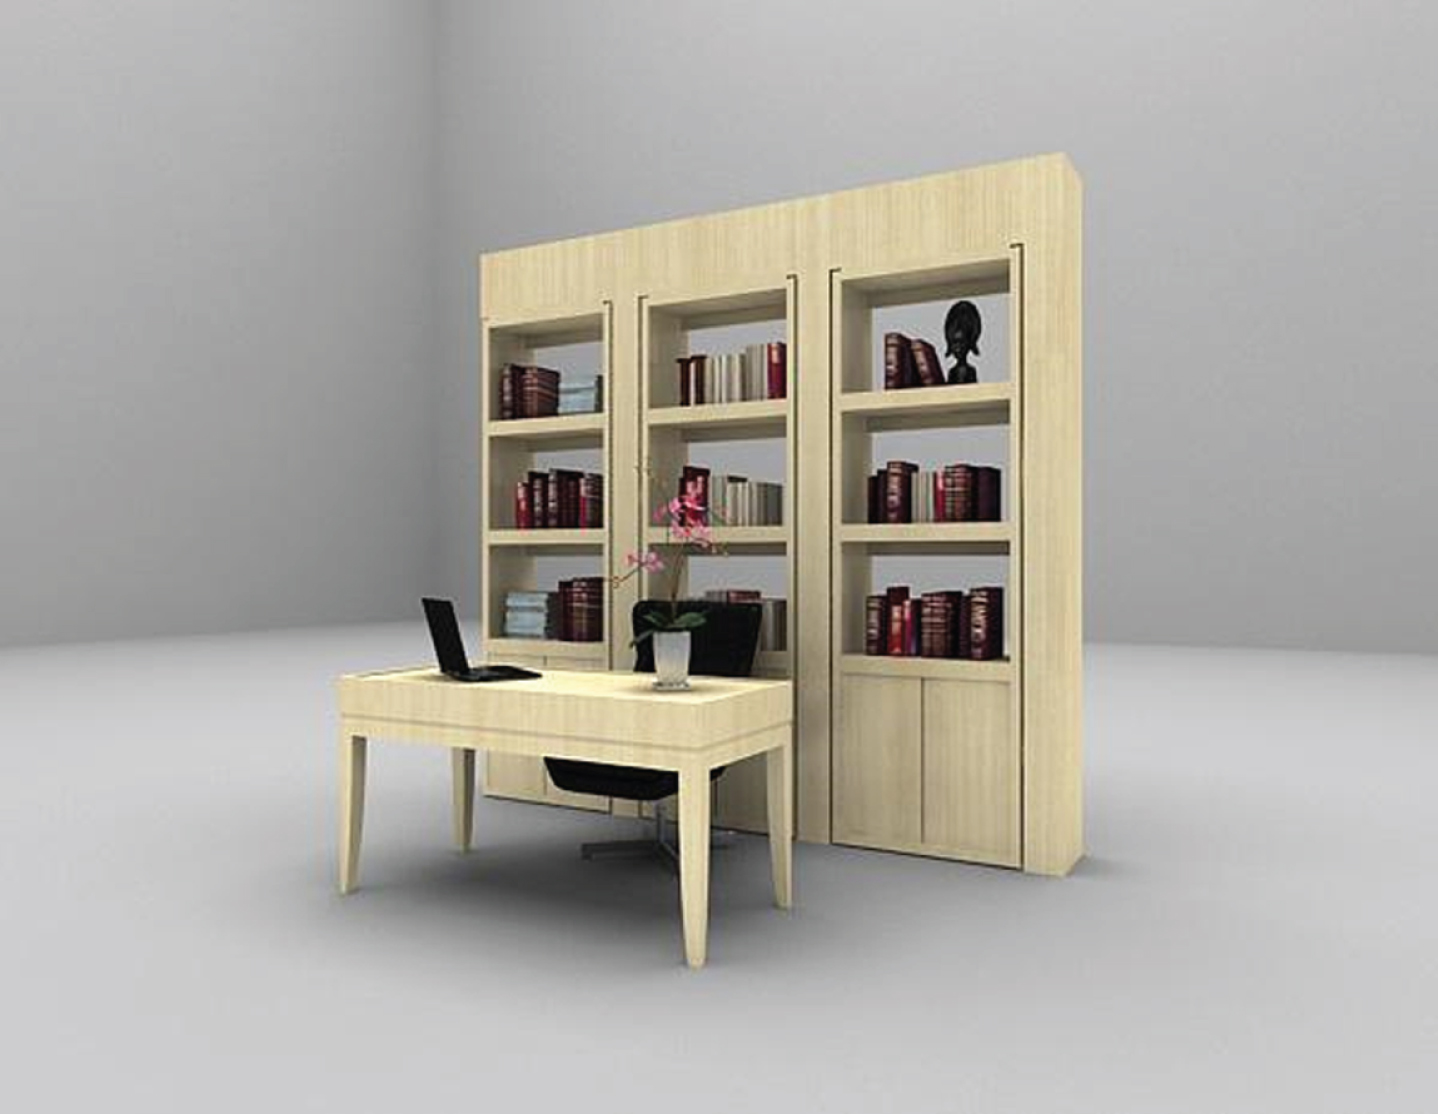 The bookcase model.